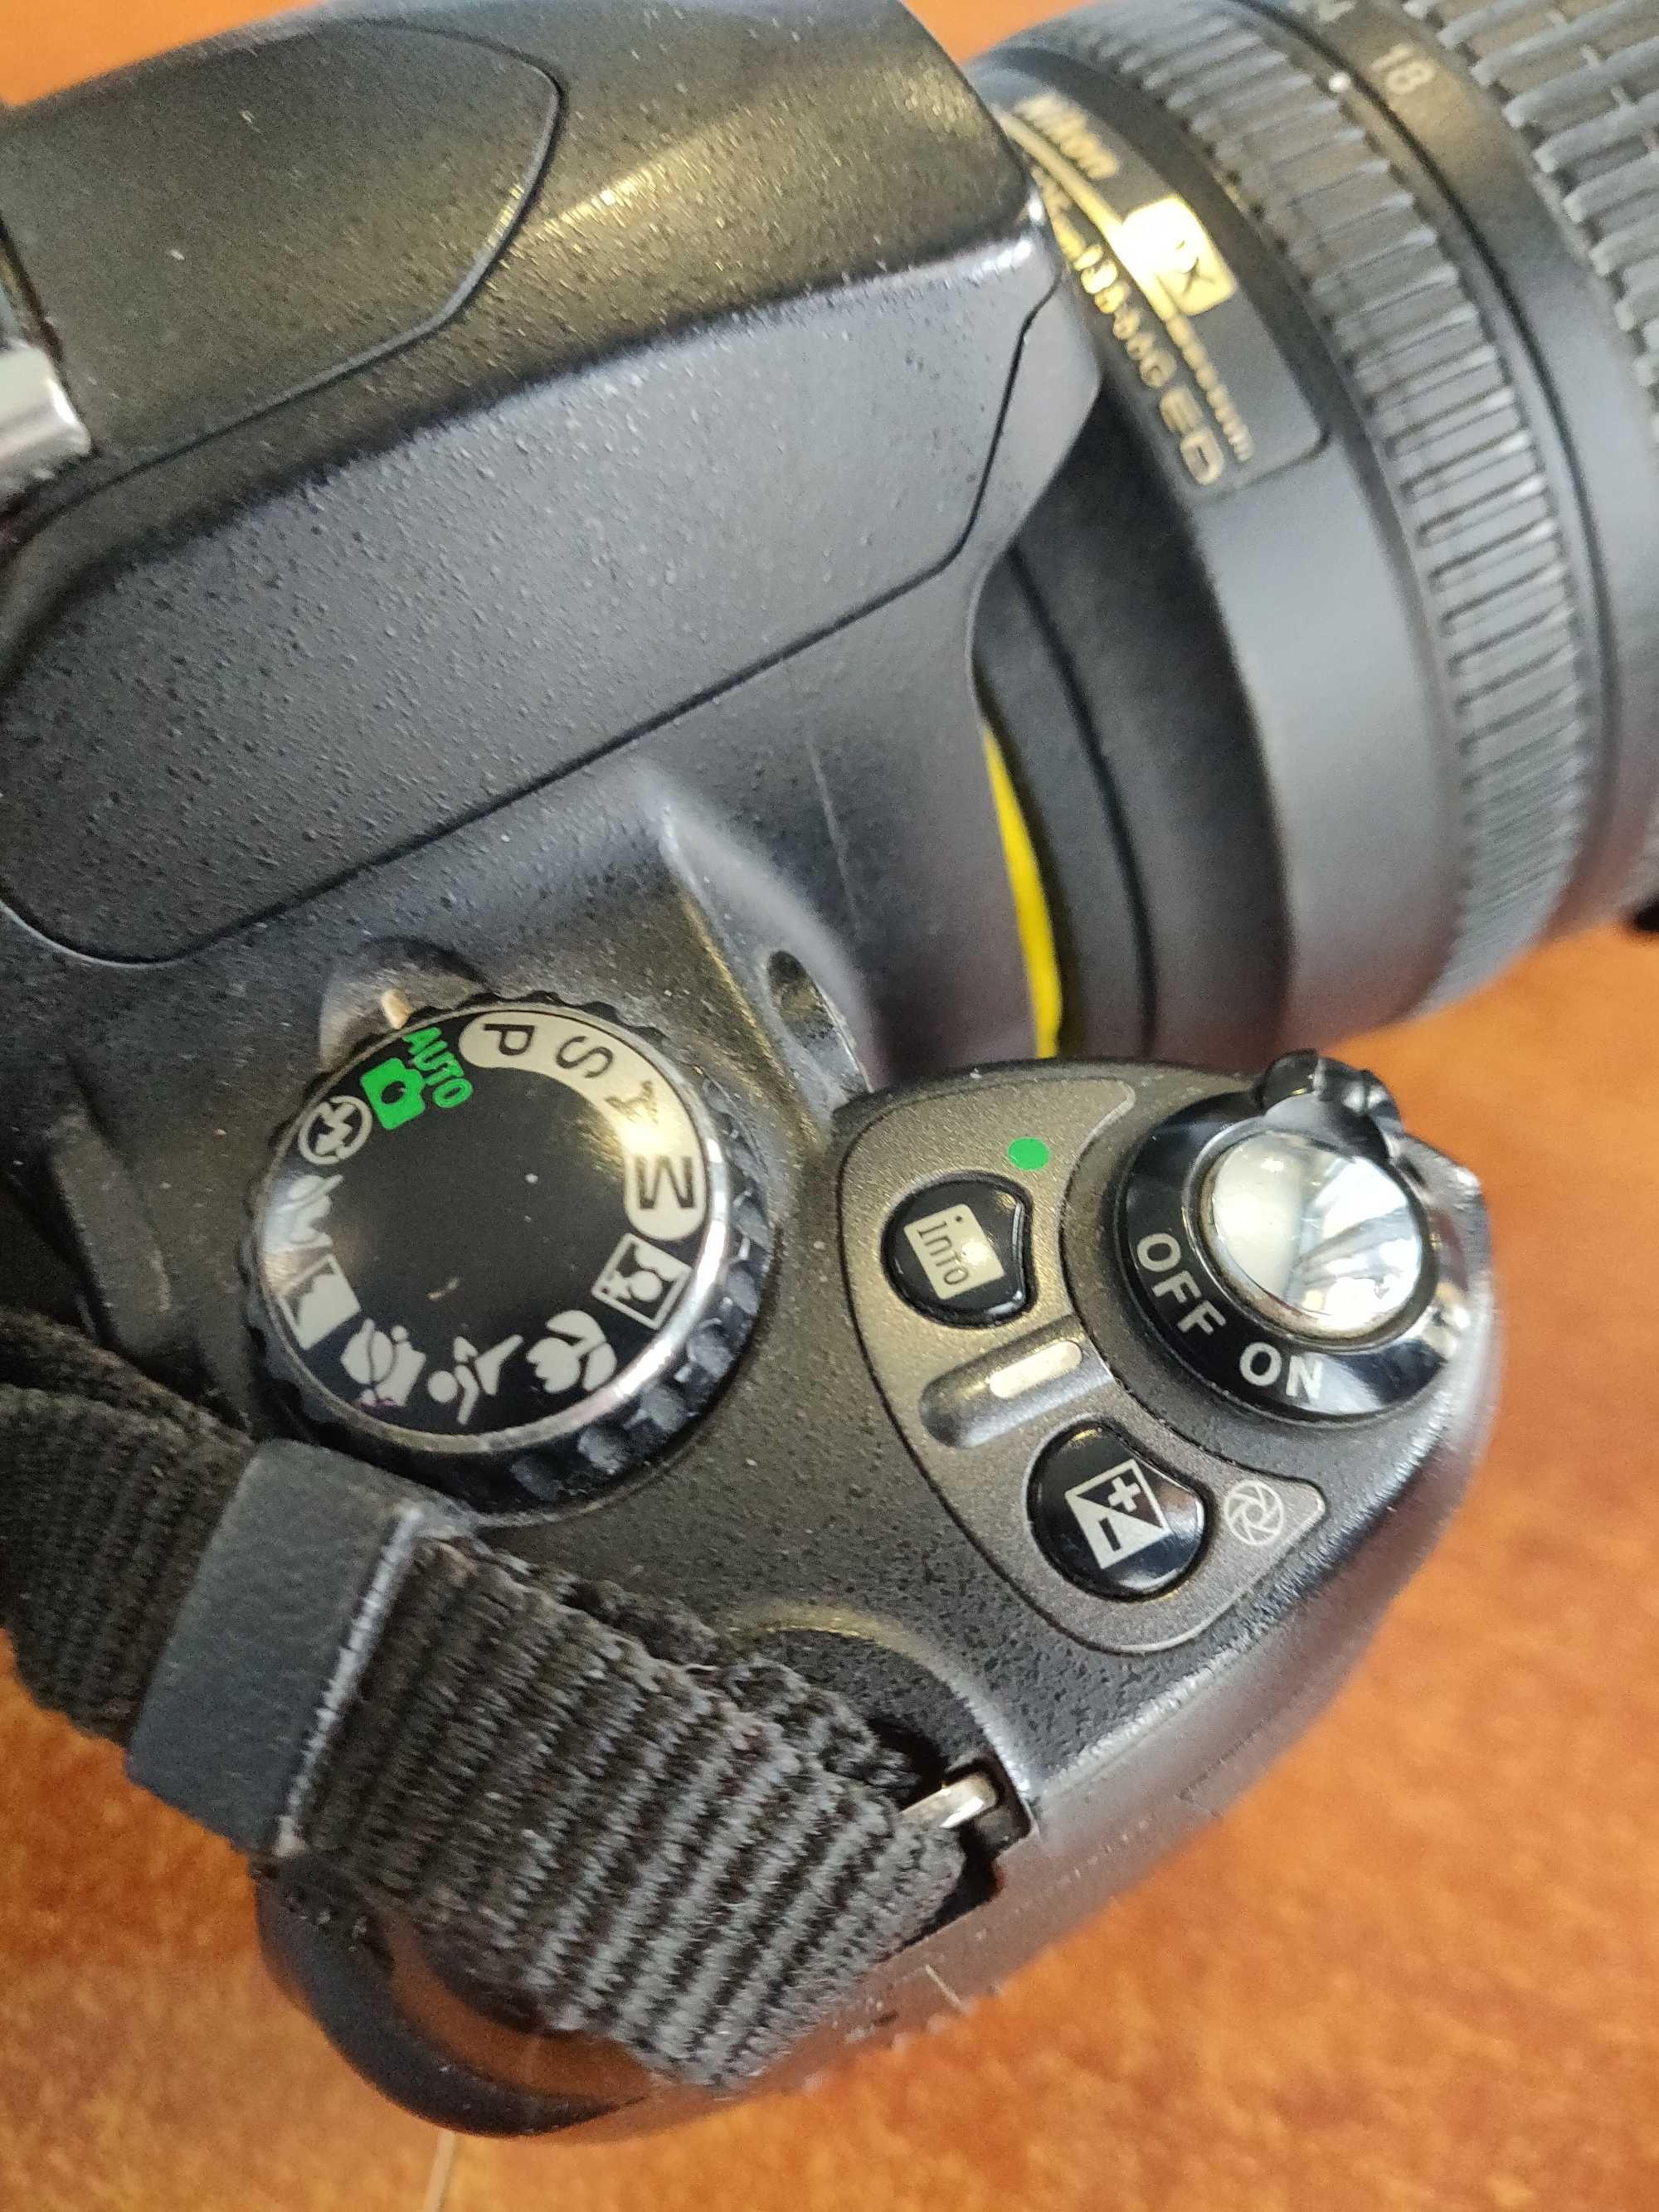 Фотокамера Nikon D40